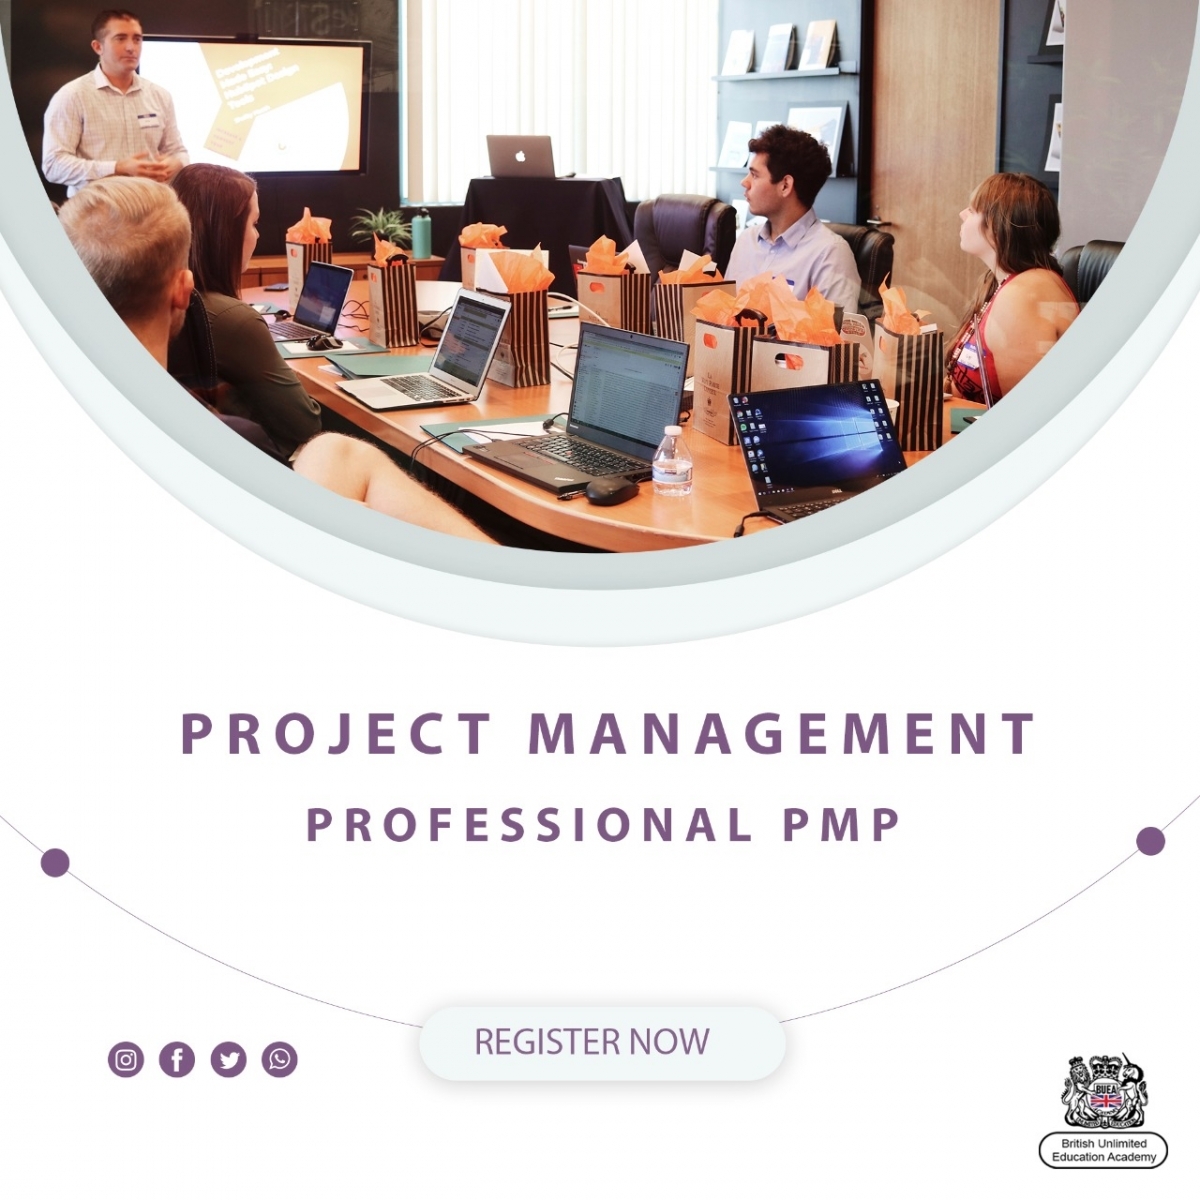 Project management professional pmp